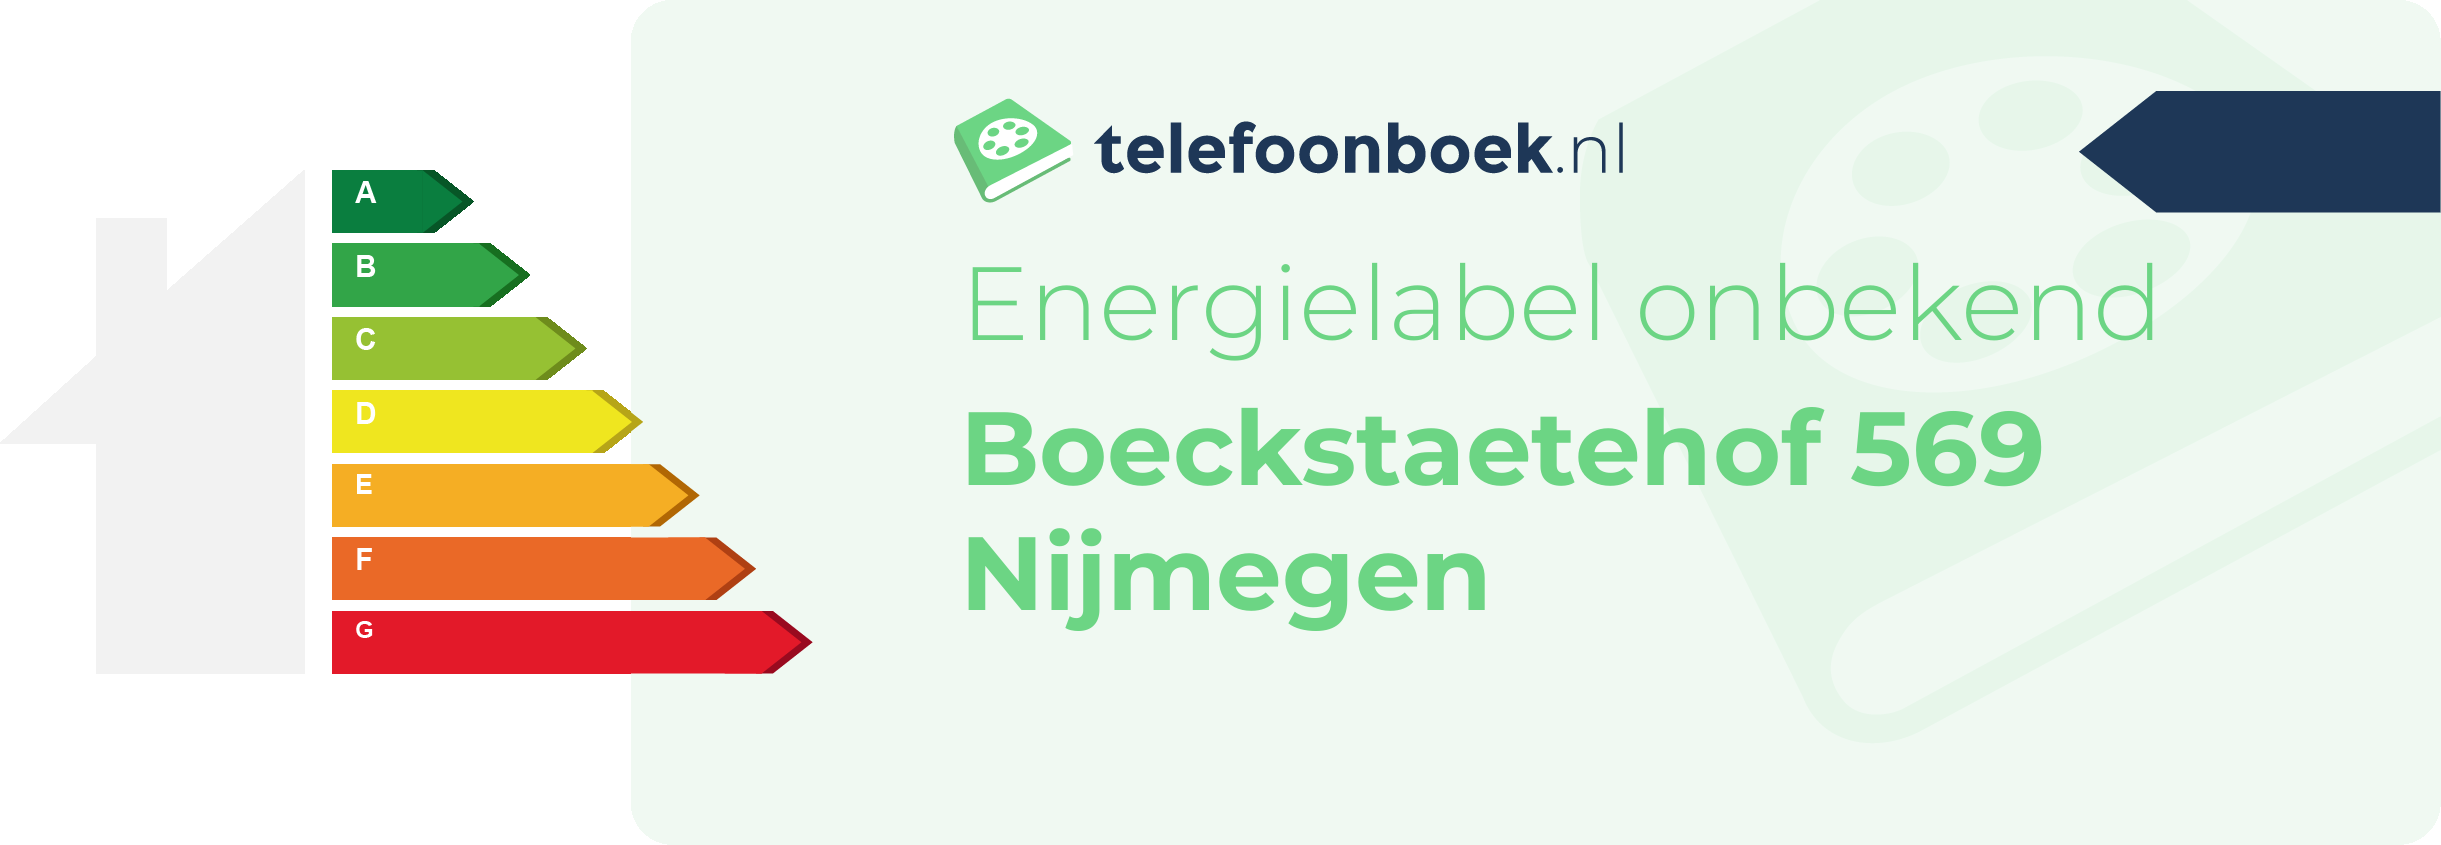 Energielabel Boeckstaetehof 569 Nijmegen